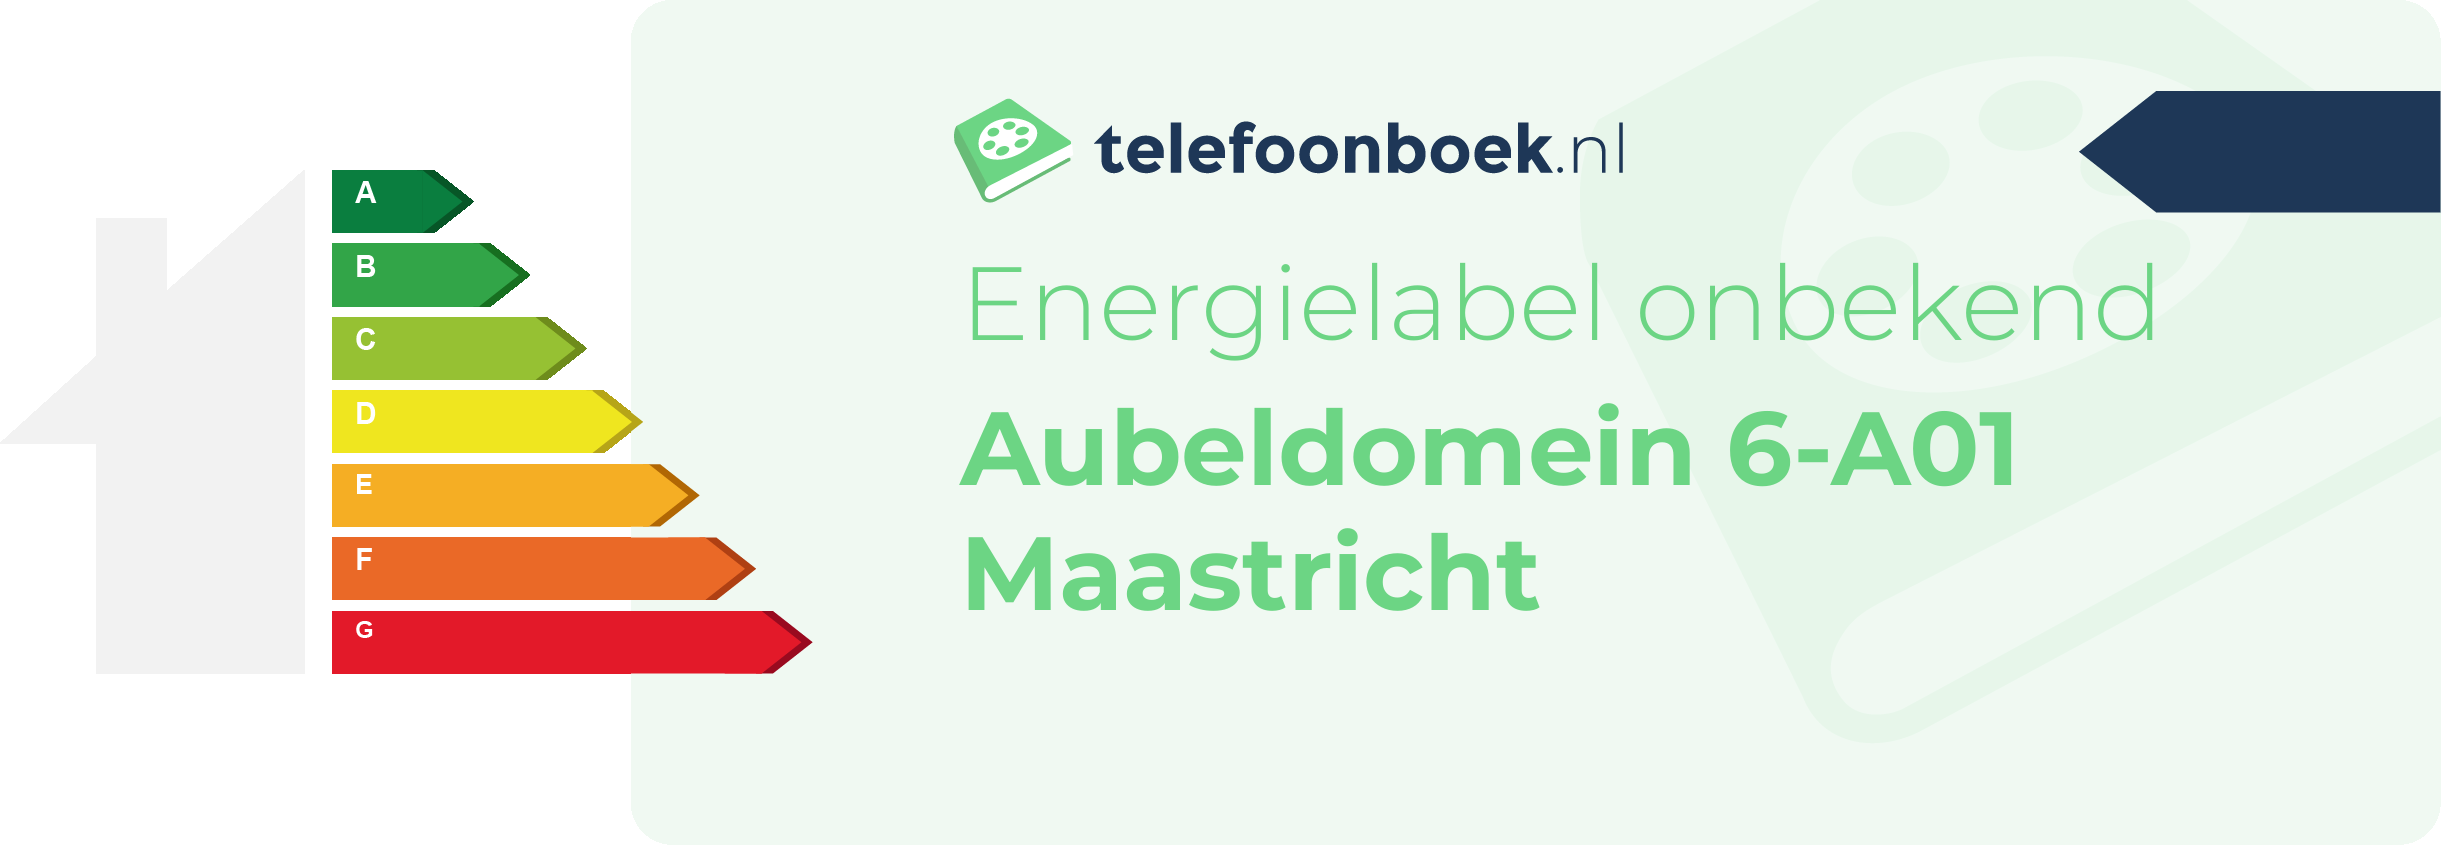 Energielabel Aubeldomein 6-A01 Maastricht